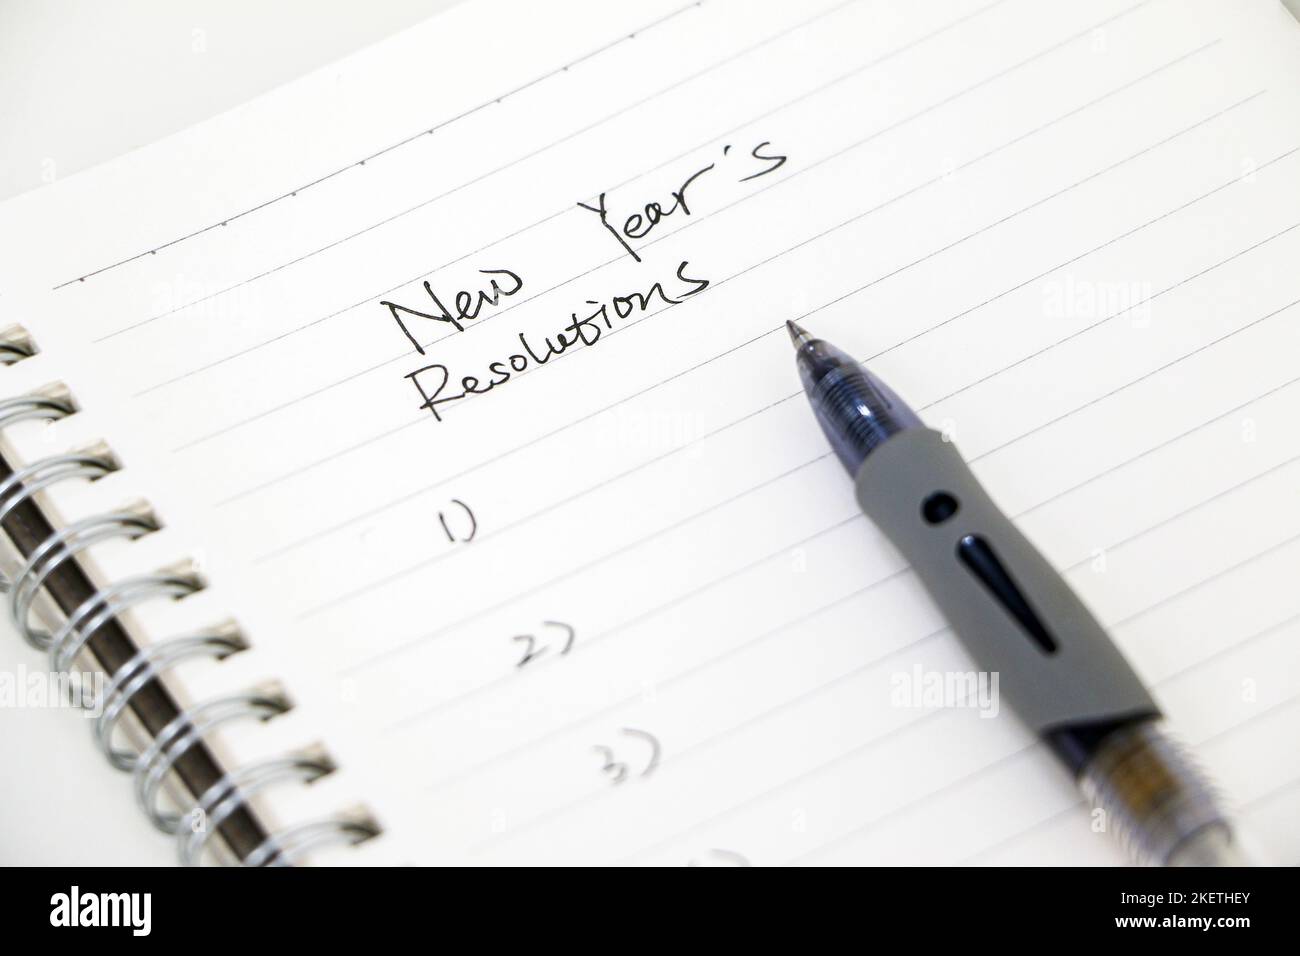 Neujahrsvorsätze schreiben, Liste auf weißem Notizblock mit Kugelschreiber. Ziele für das neue Jahr setzen. Stockfoto